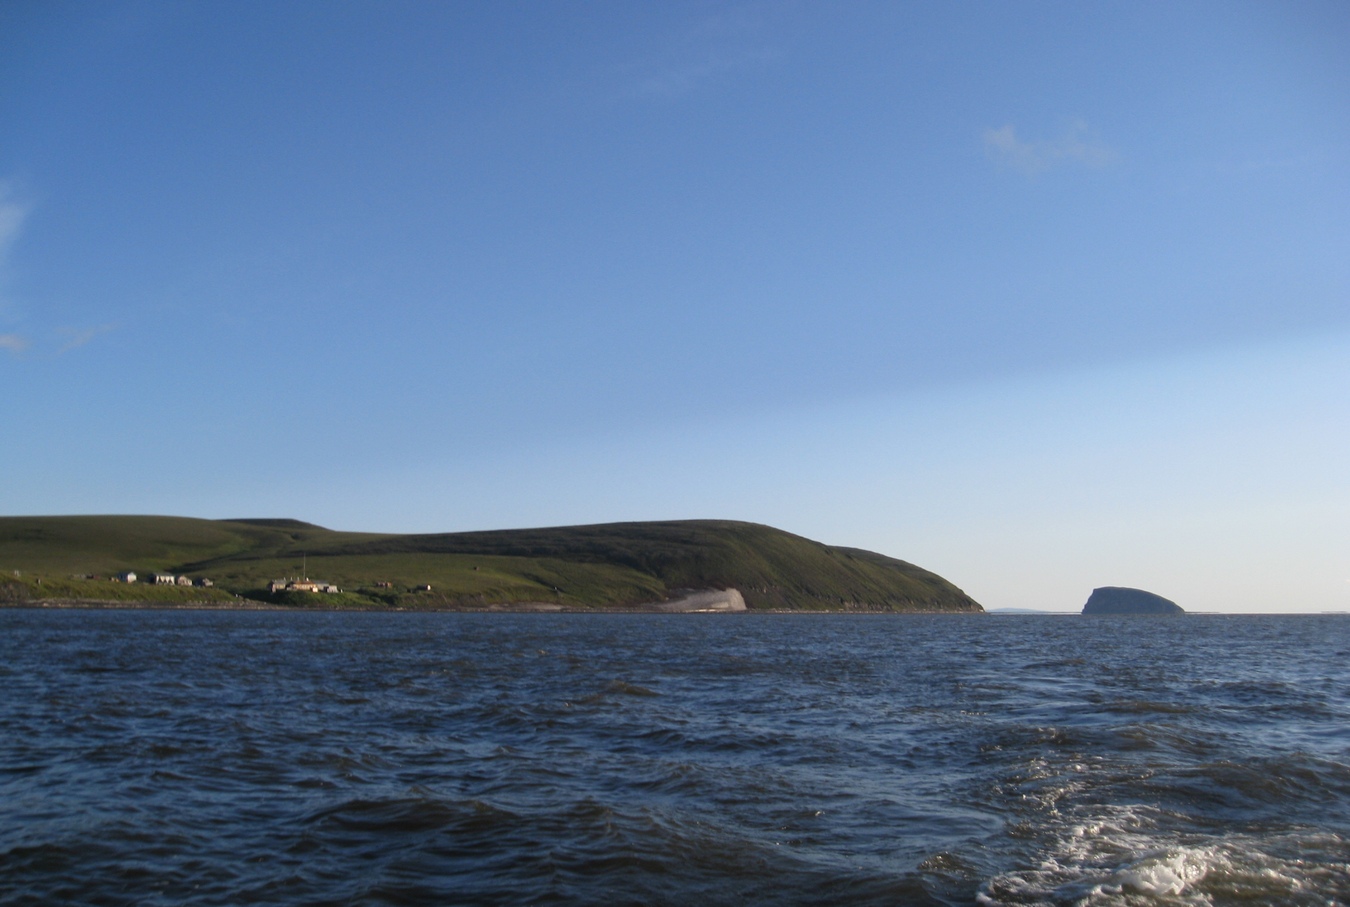 Остров Столб, протока Быковская, изображение ландшафта.